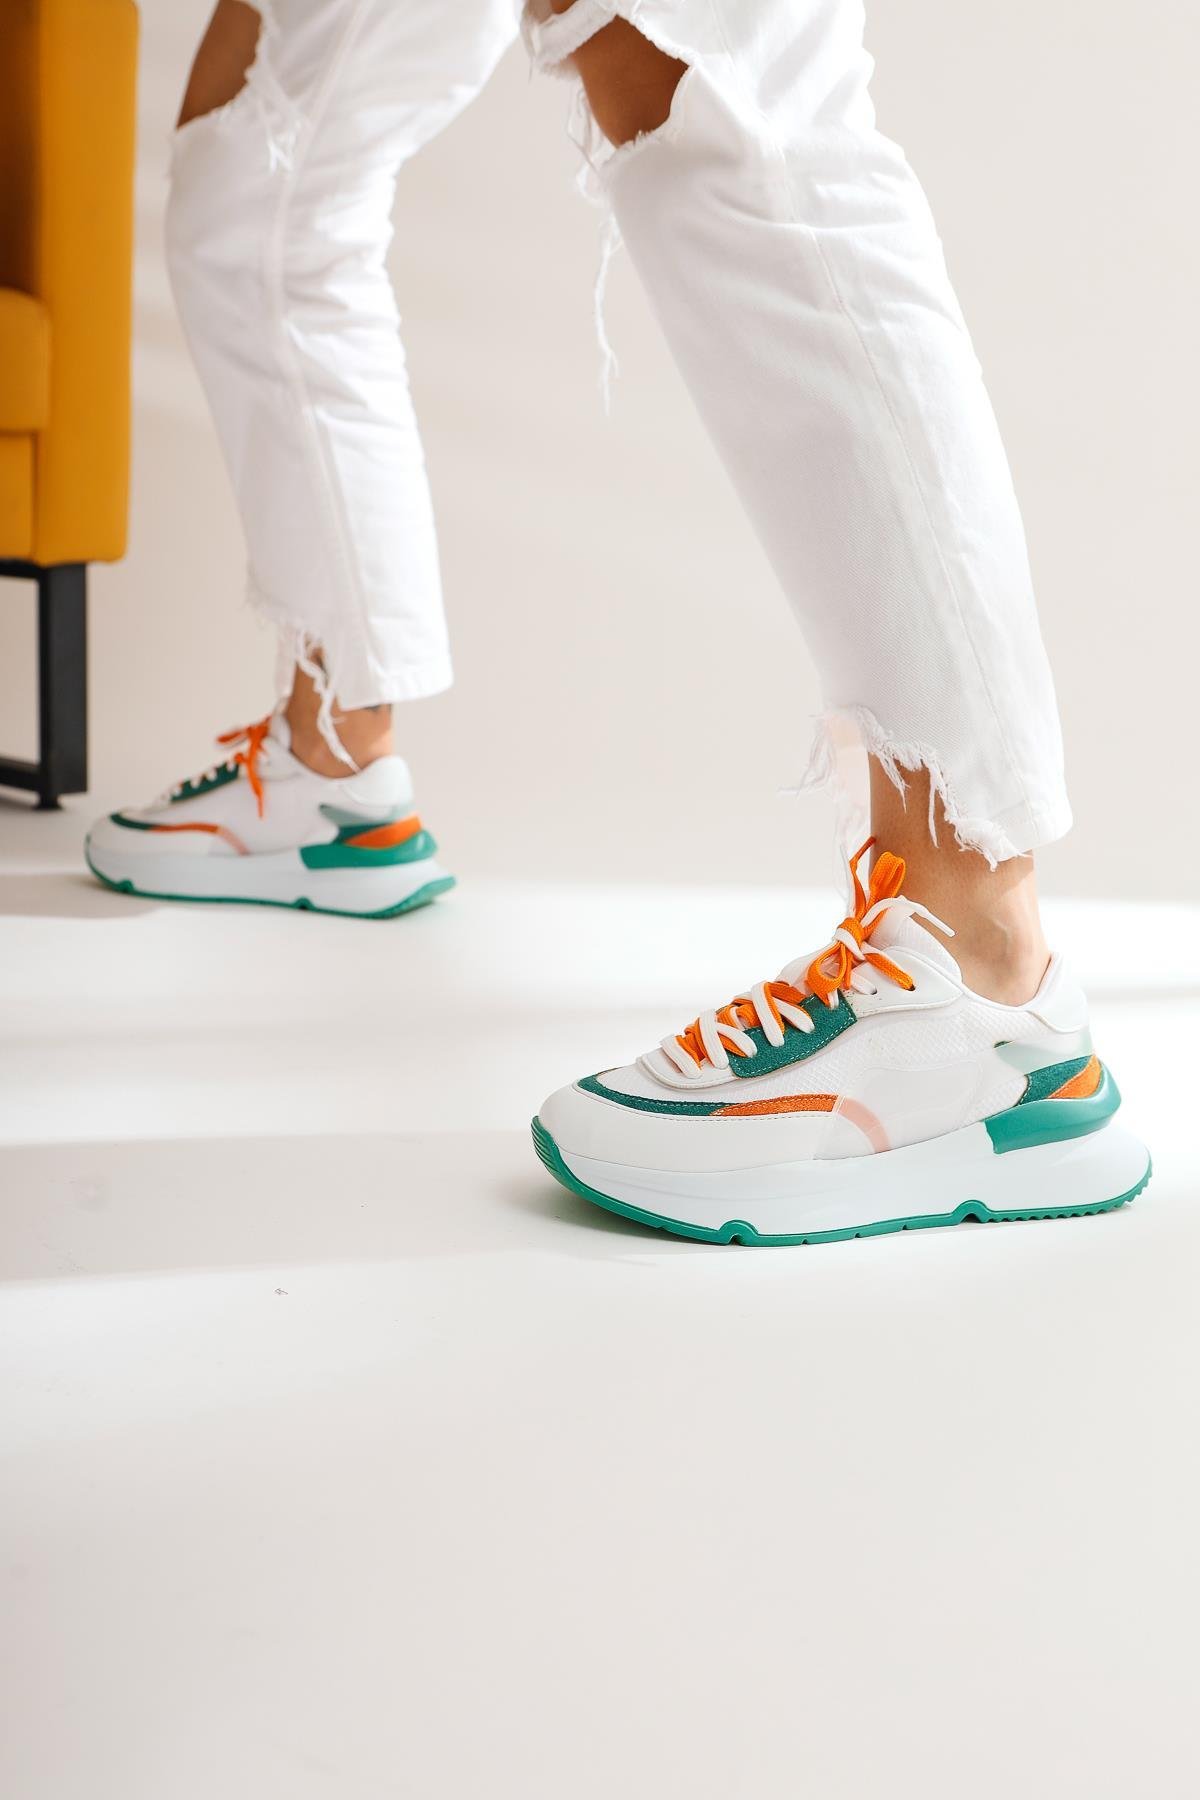 Luam Beyaz Yeşil Kadın Sneakers Spor Kadın Ayakkabı